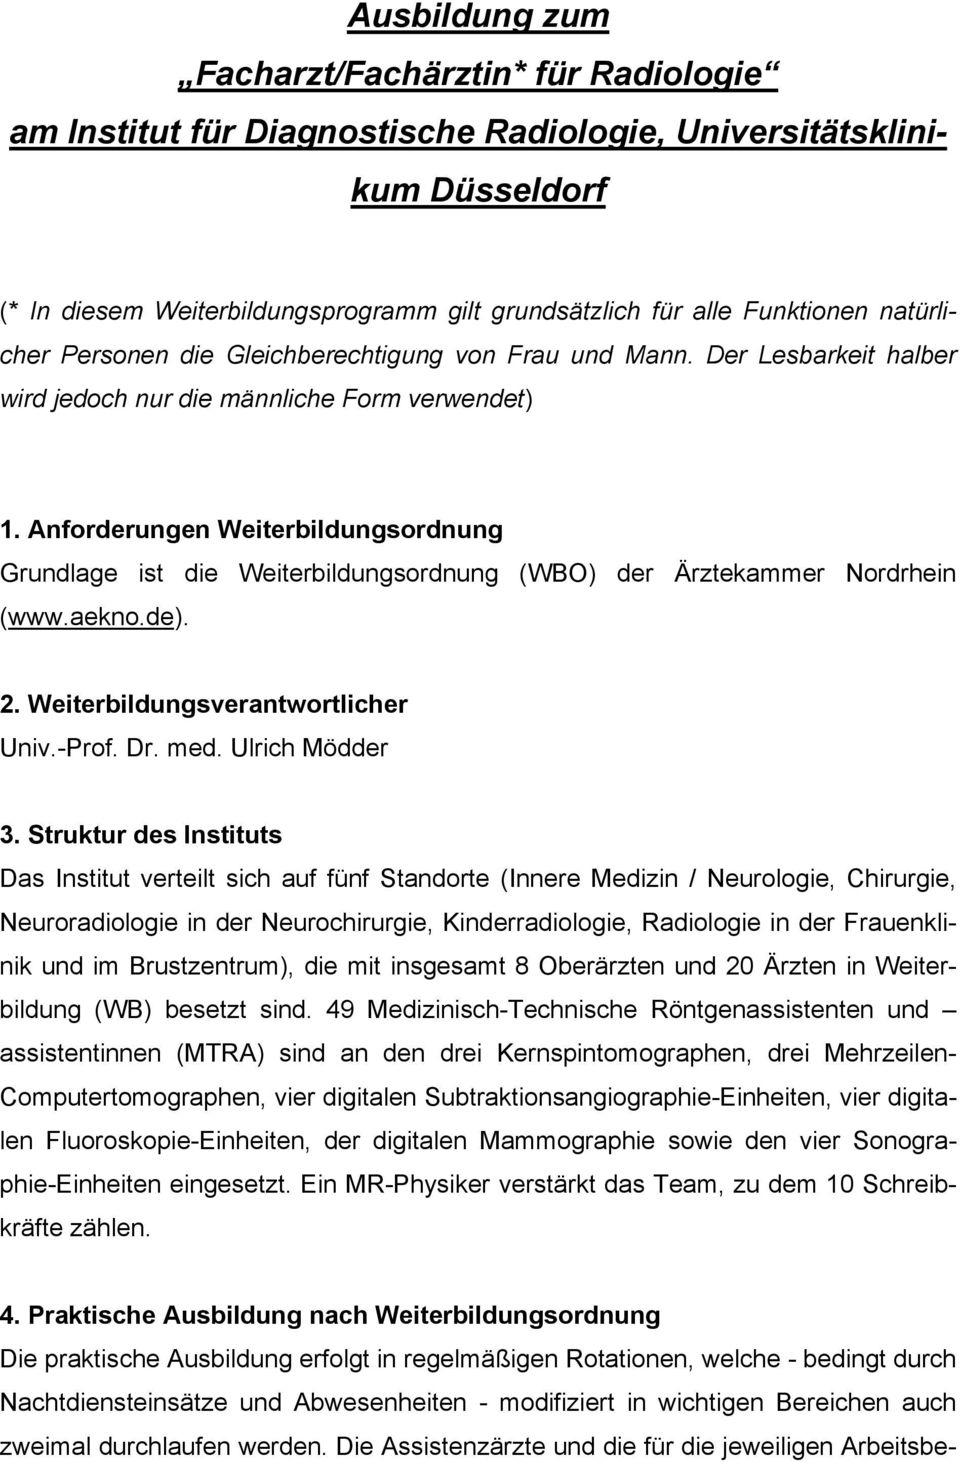 Anforderungen Weiterbildungsordnung Grundlage ist die Weiterbildungsordnung (WBO) der Ärztekammer Nordrhein (www.aekno.de). 2. Weiterbildungsverantwortlicher Univ.-Prof. Dr. med. Ulrich Mödder 3.